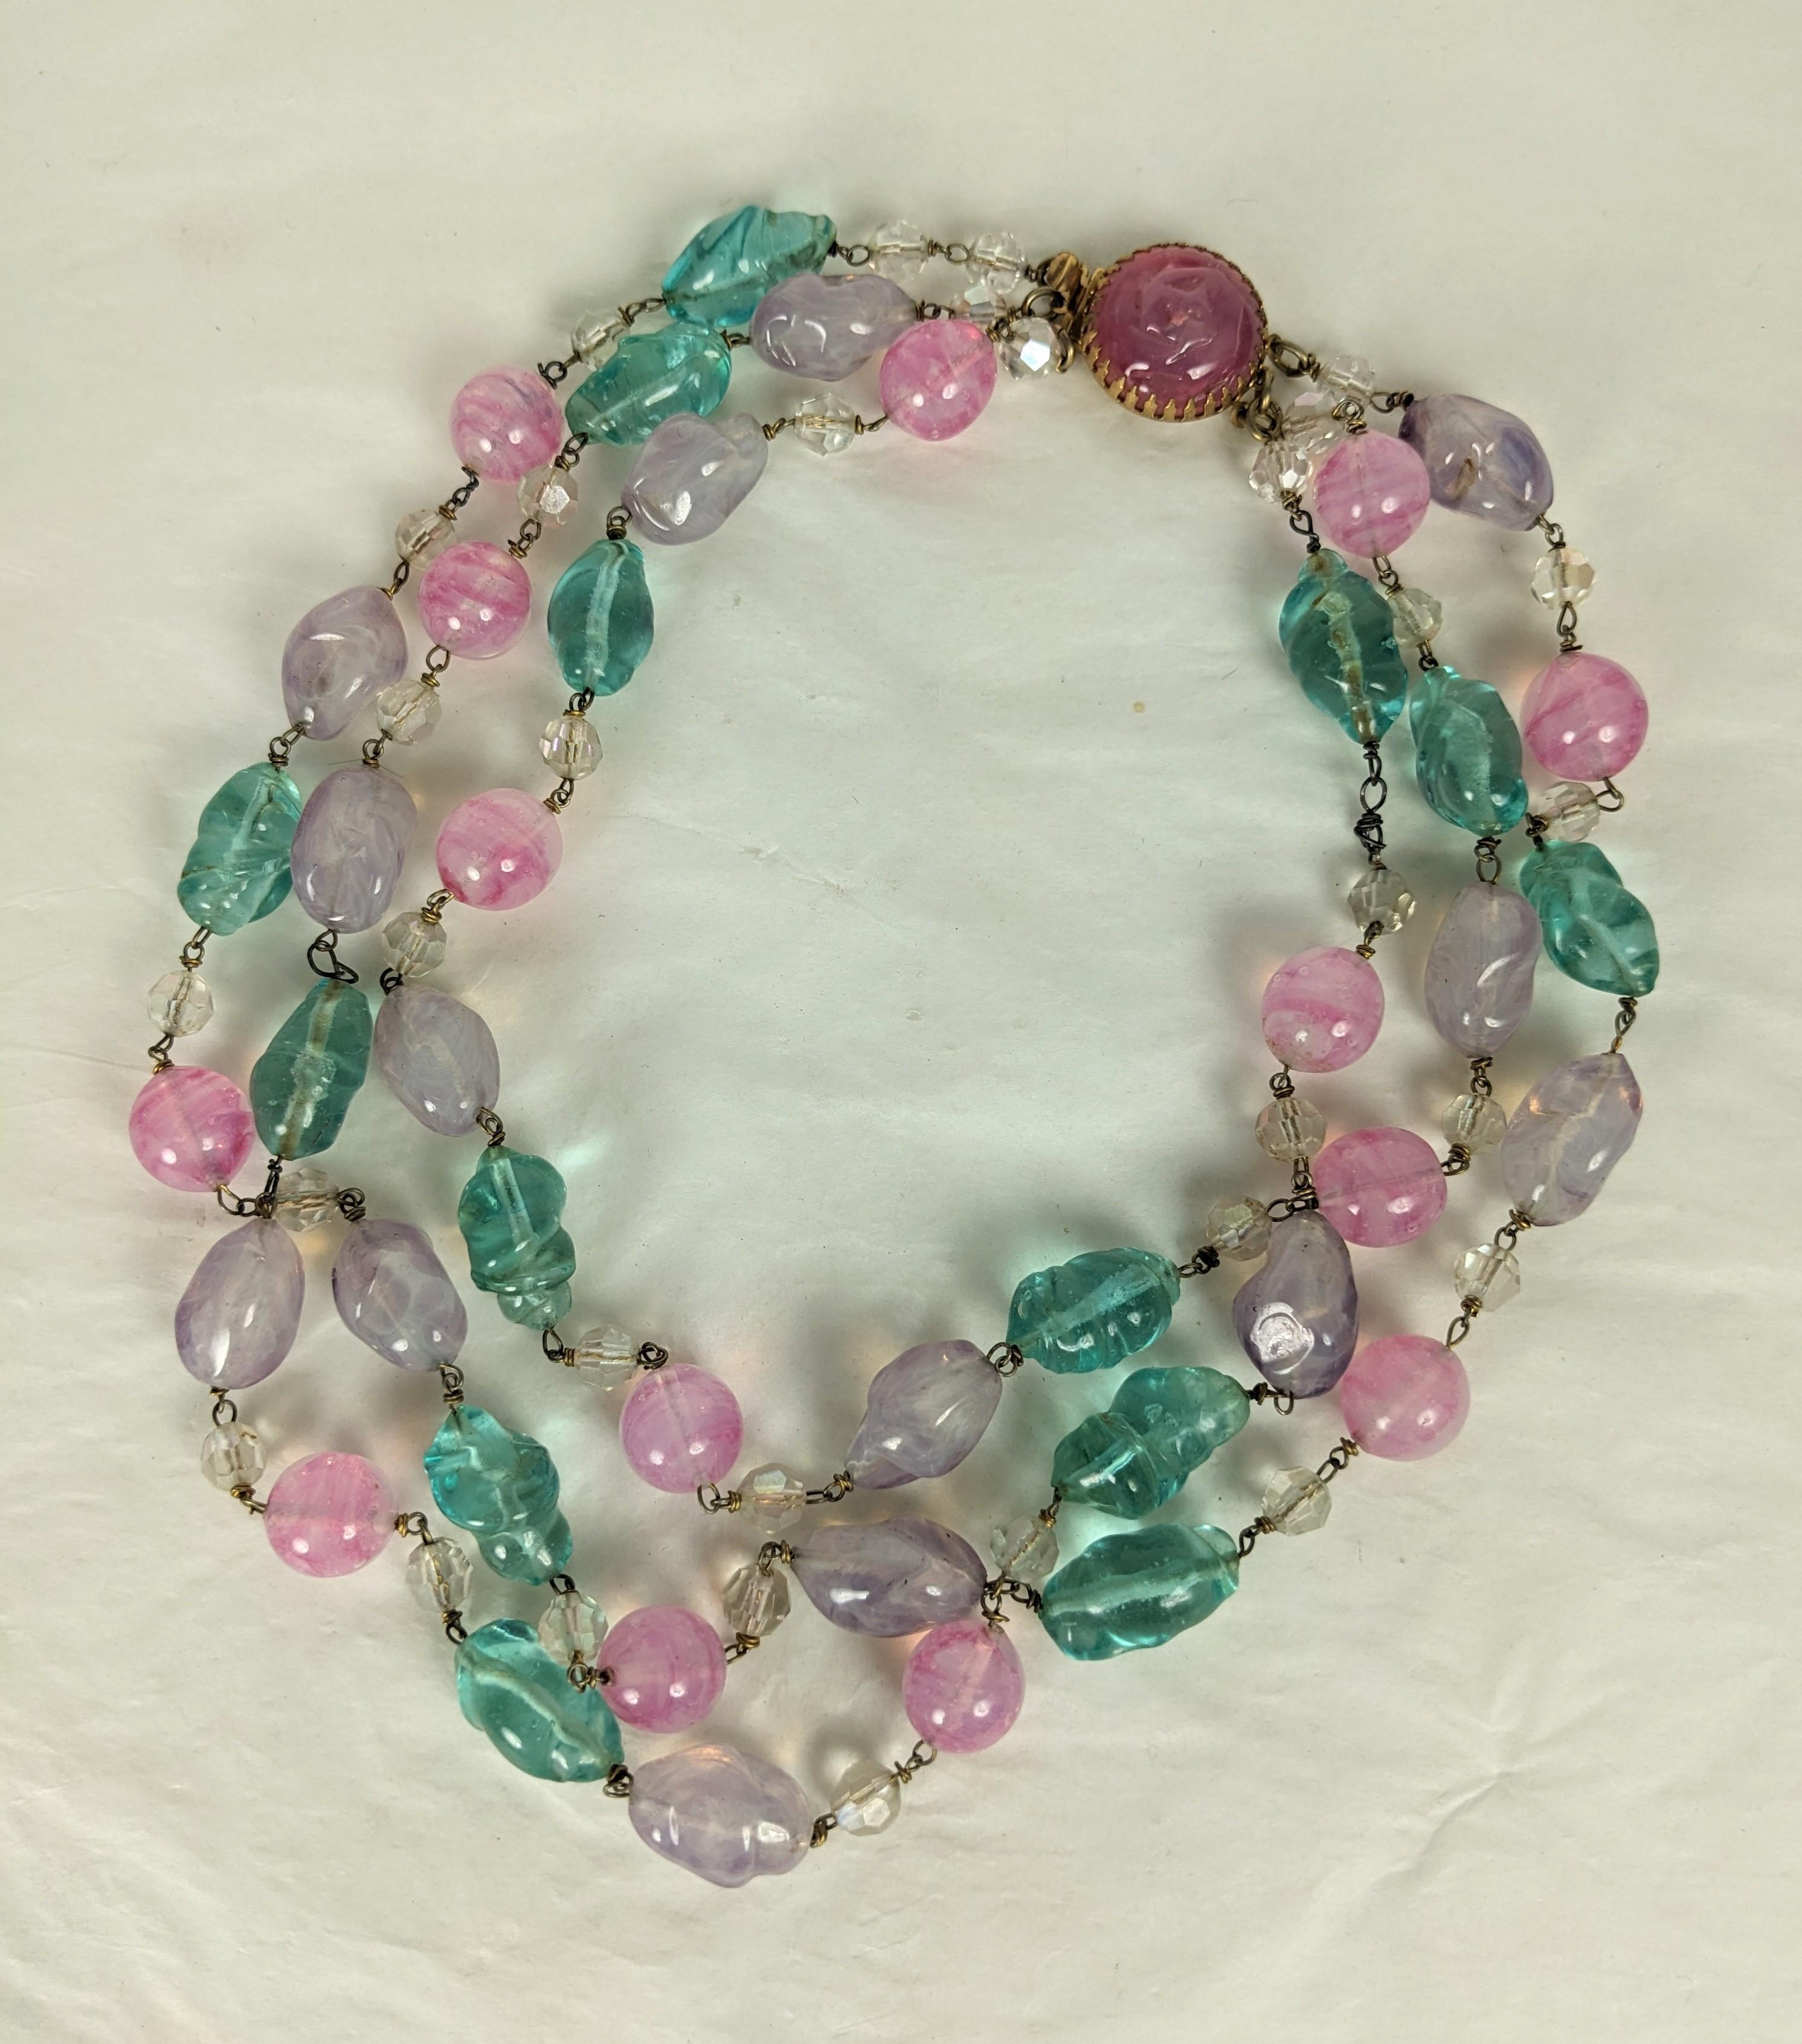 Collier de perles en pate de verre Louis Rousselet pastel à 3 rangs. Composé de quartz rose, d'améthyste et d'aigue-marine en pate de verre Gripoix fait main  des perles. Le fil est finement enroulé à la main et rehaussé de perles de cristal rondes